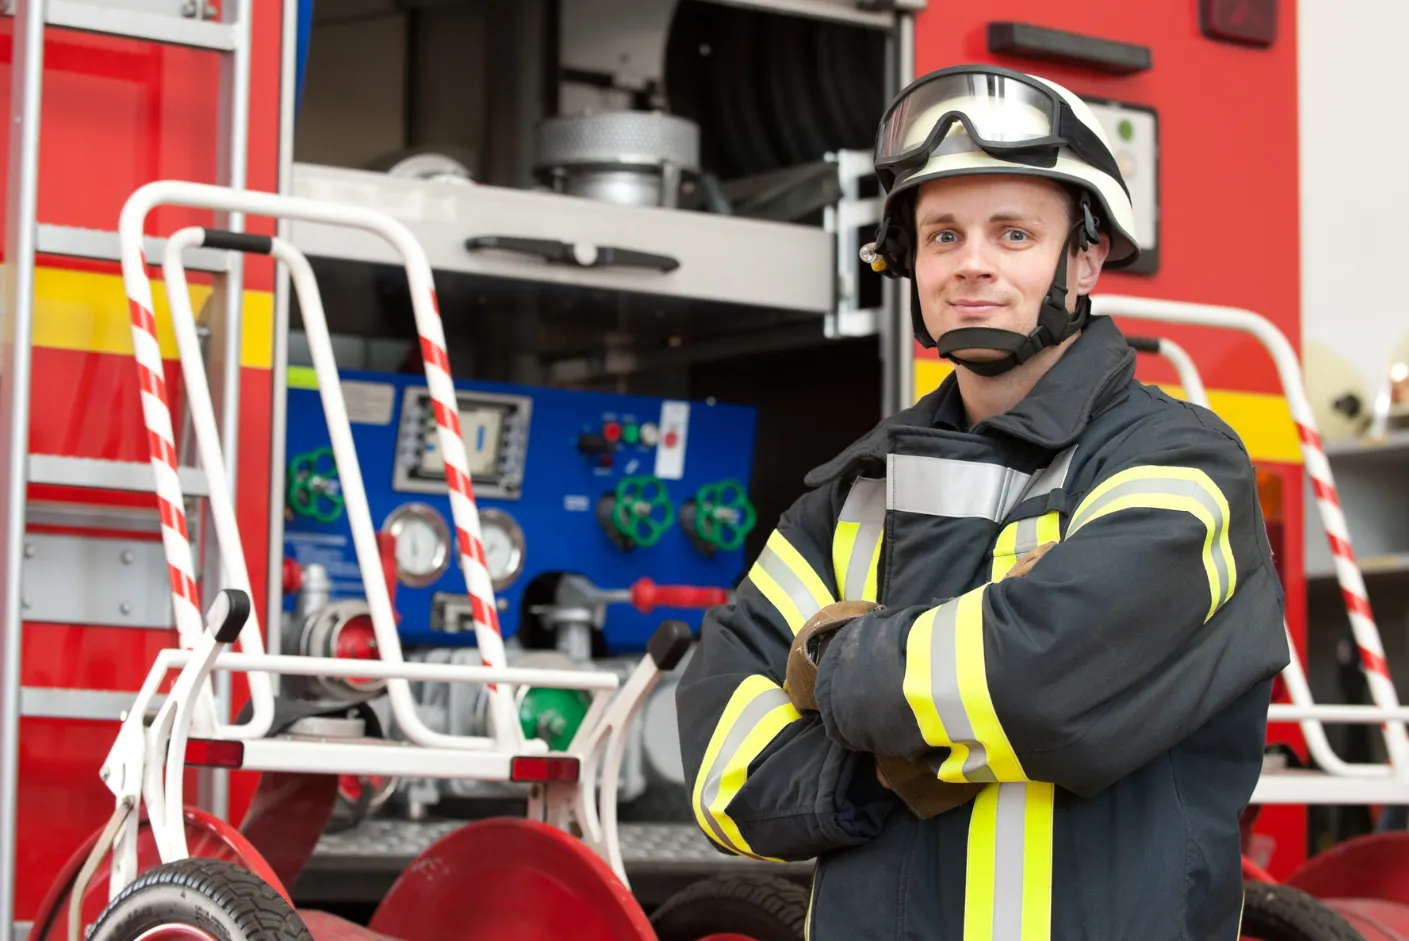 Entraînement au test pompier pour améliorer ses compétences et connaissances